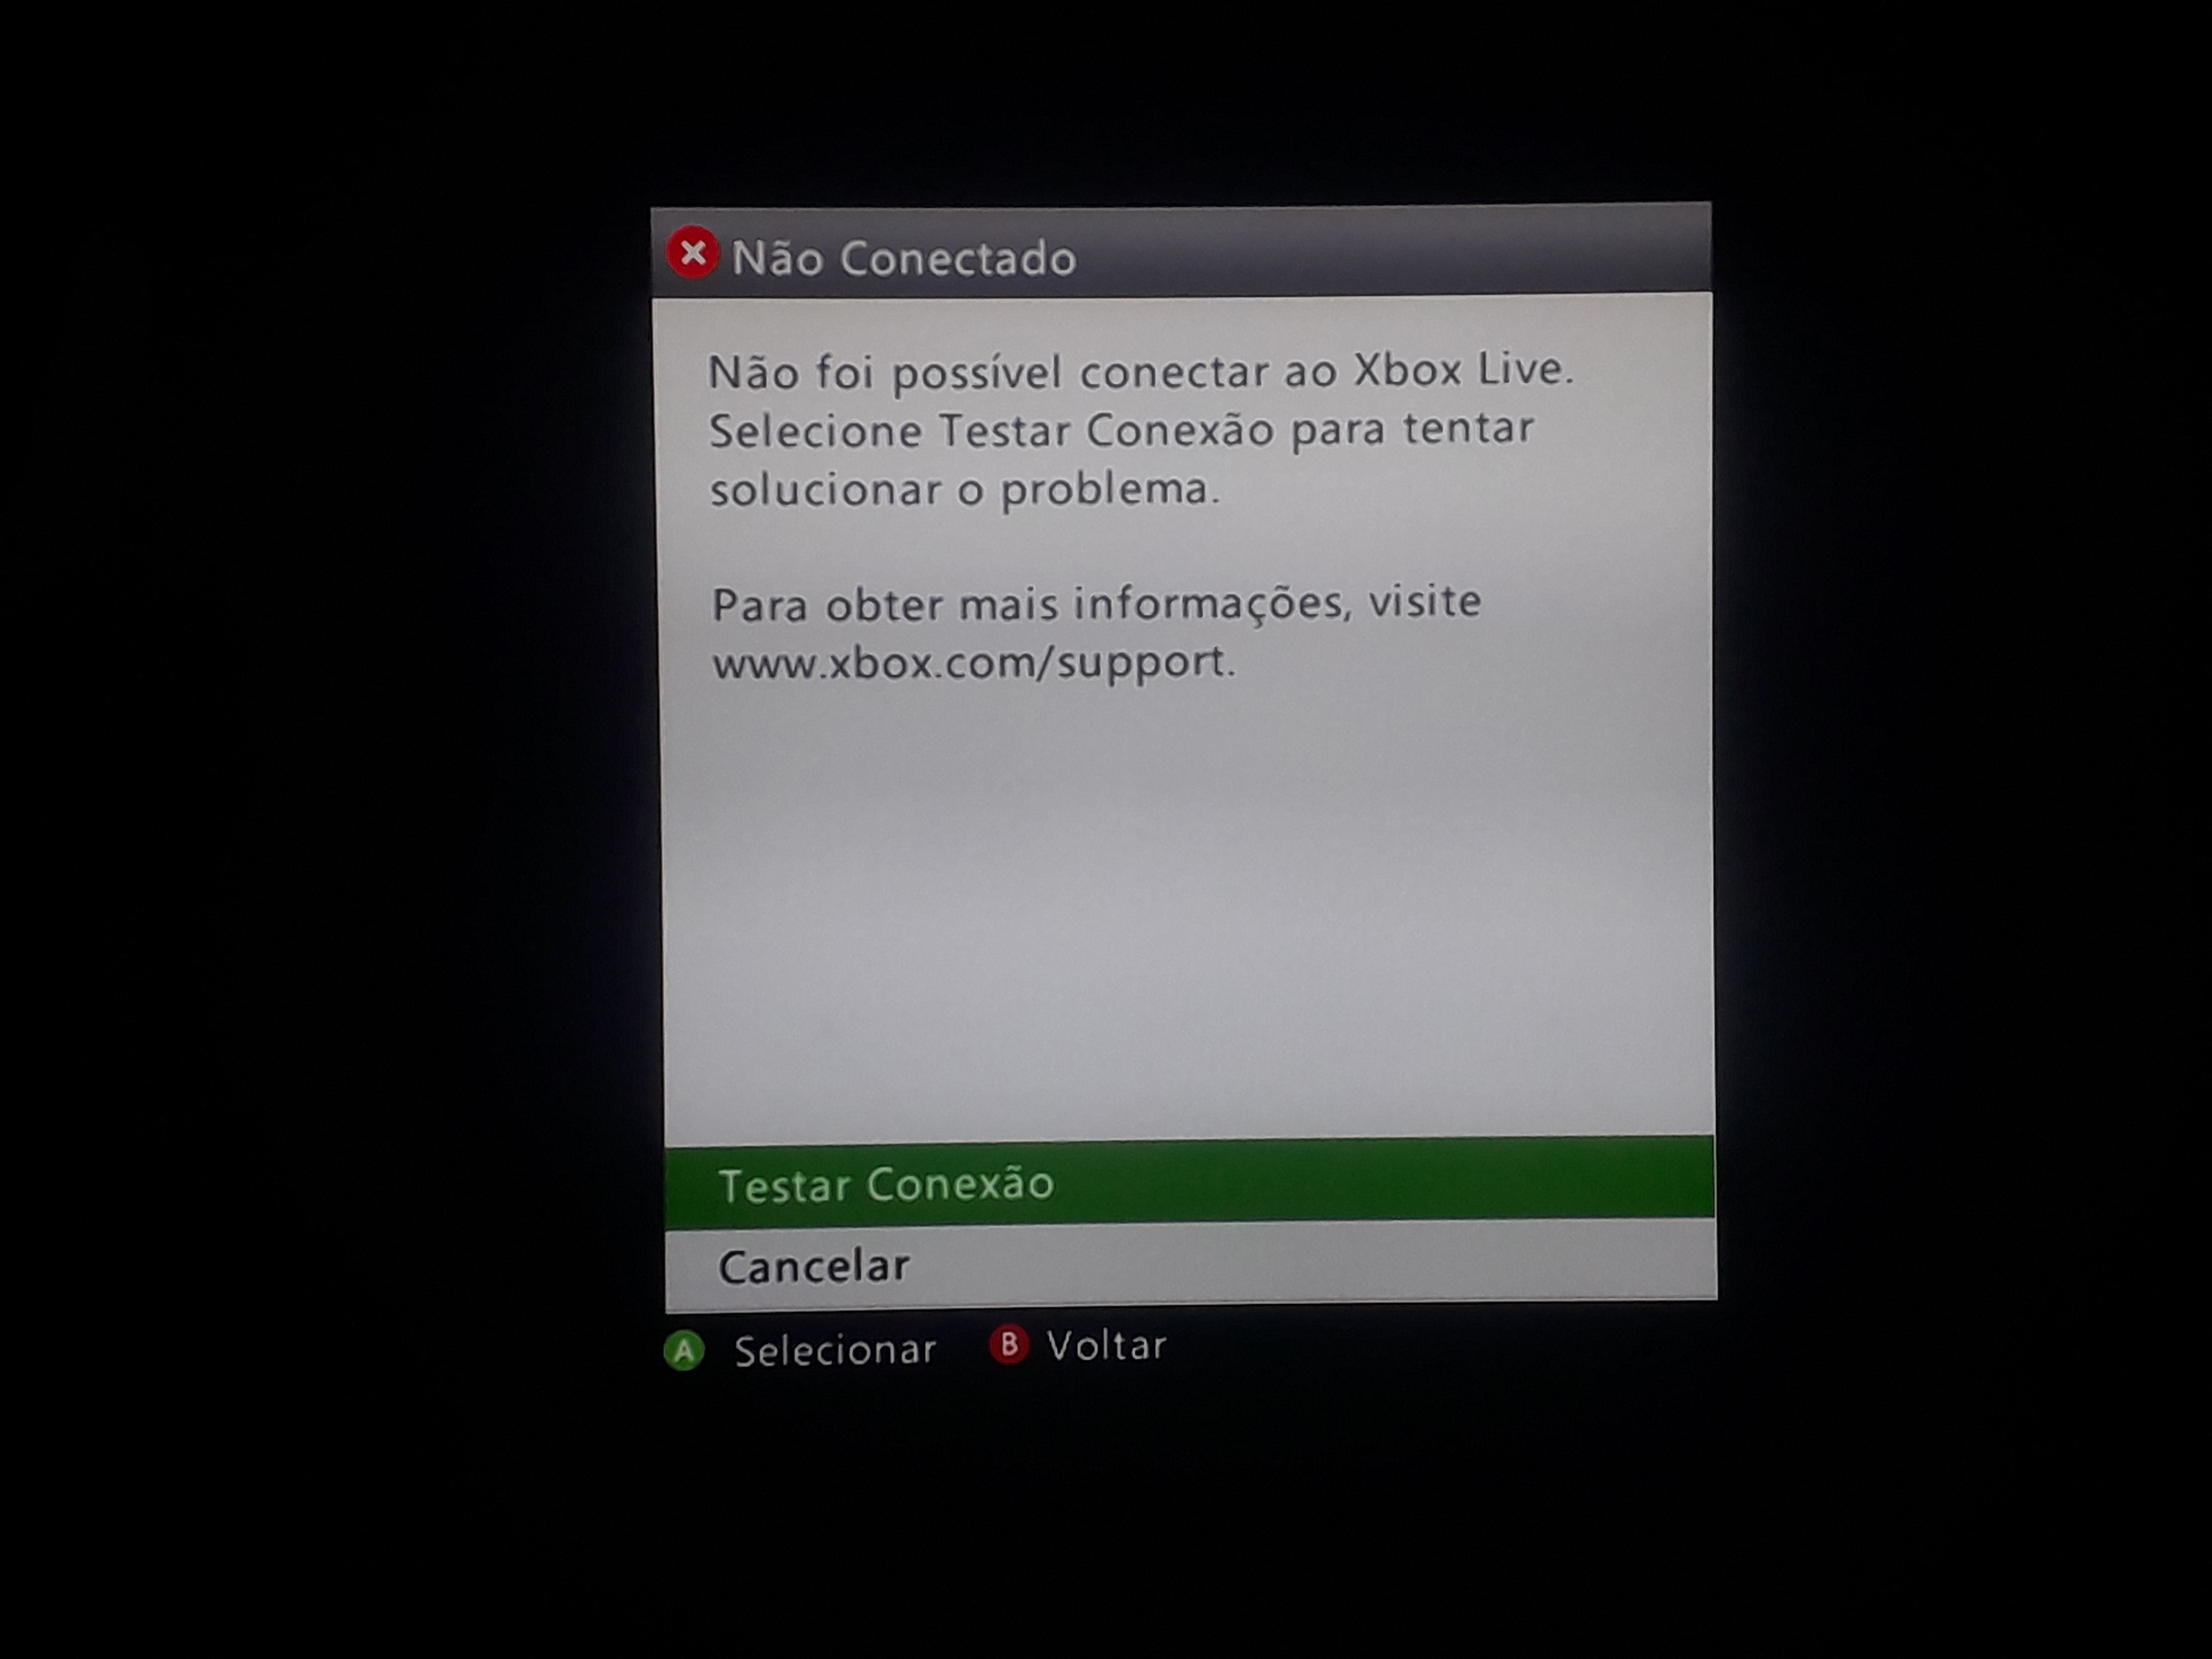 Aprenda a RESGATAR o Código do Xbox Game Pass da FORMA CORRETA sem dá  NENHUM ERRO! 